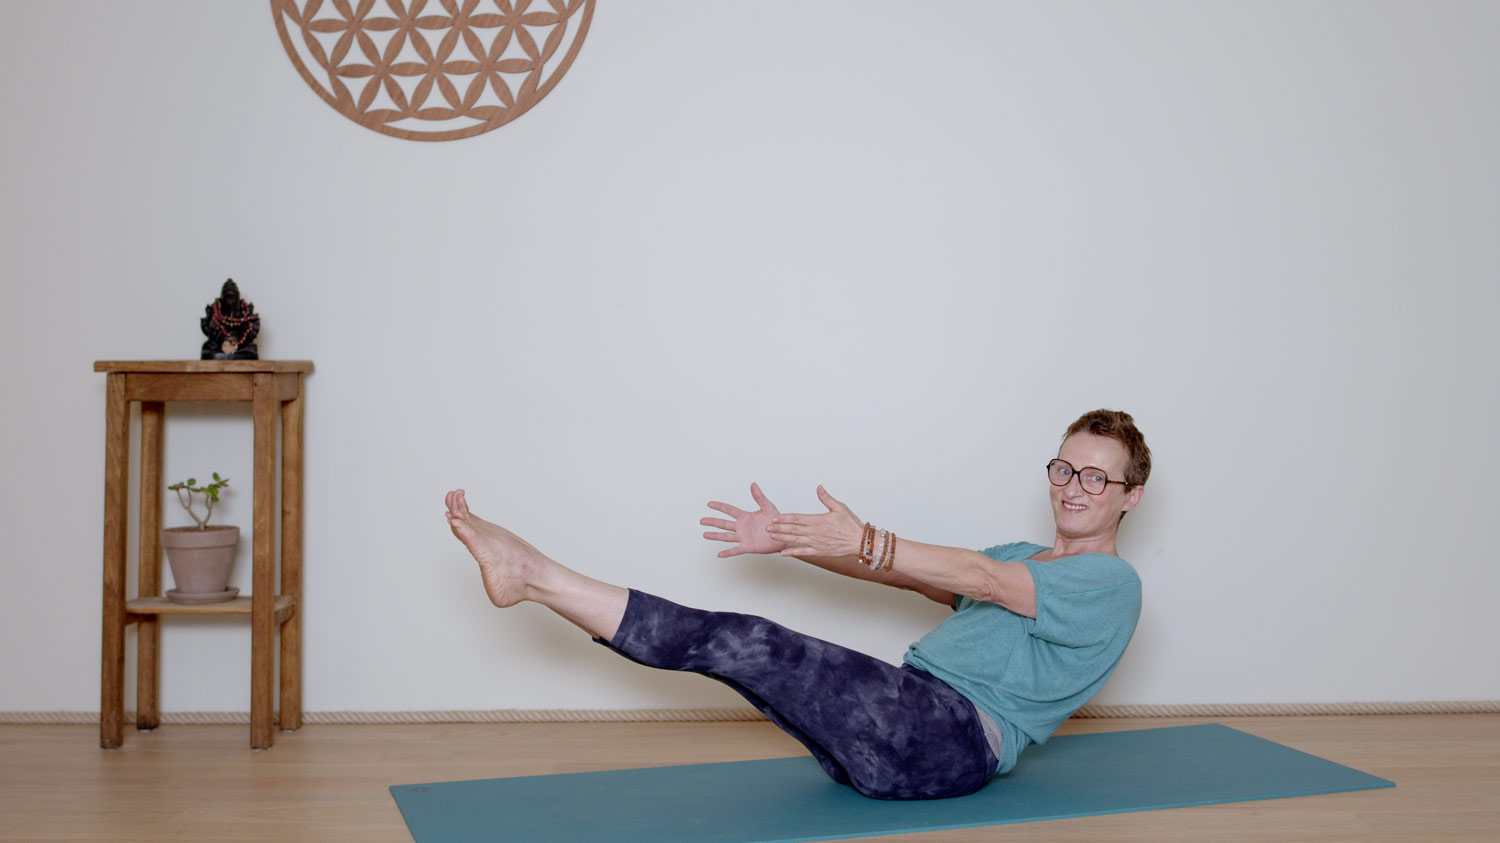  Hatha Yoga dynamique - 30 minutes - Corps de sagesse | Cours de yoga en ligne avec Delphine Denis | Hatha Yoga dynamique